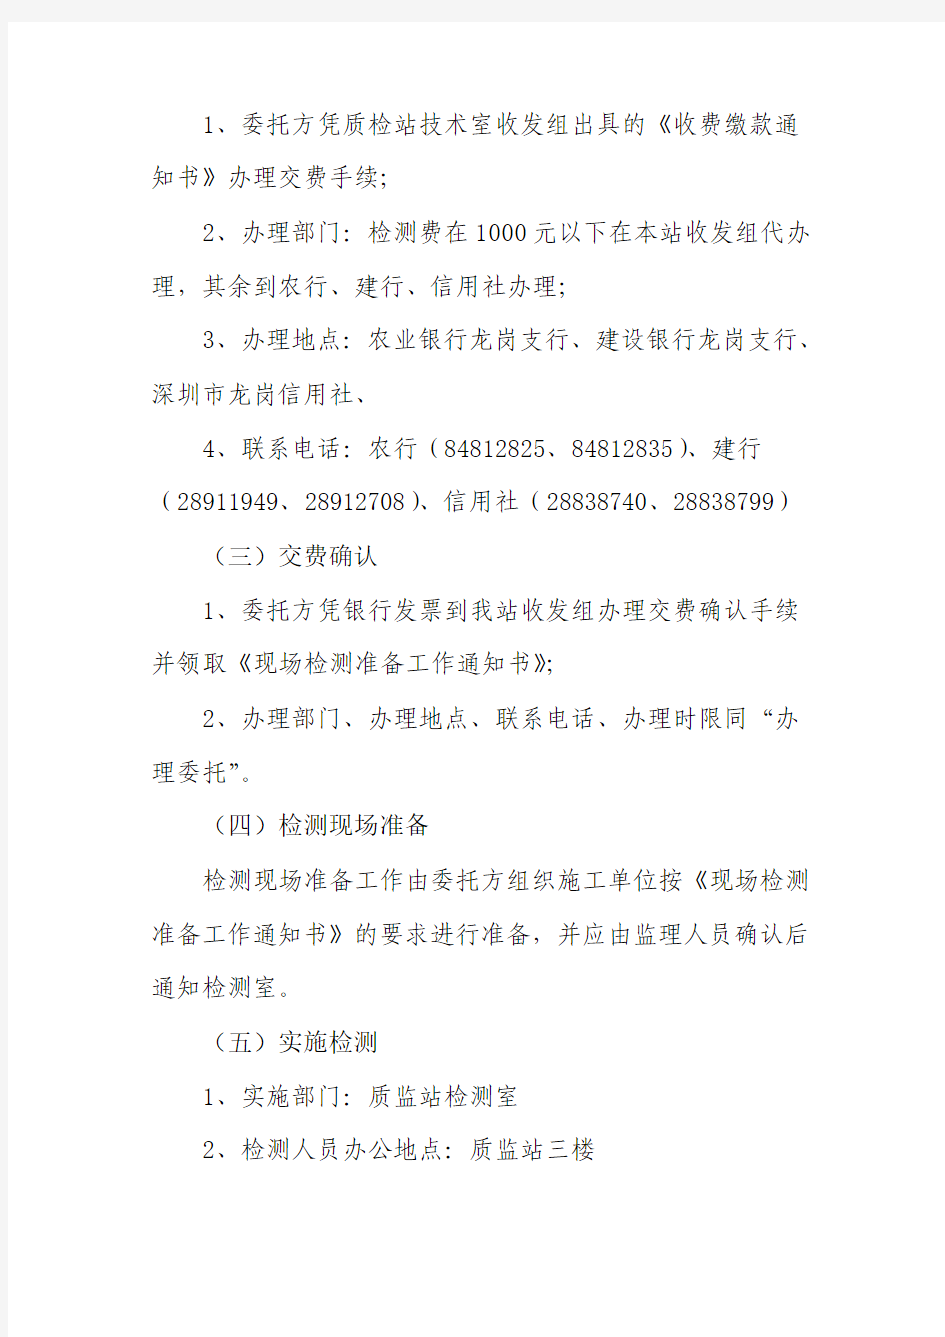 .11深圳市龙岗区工程质量检测中心办事程序